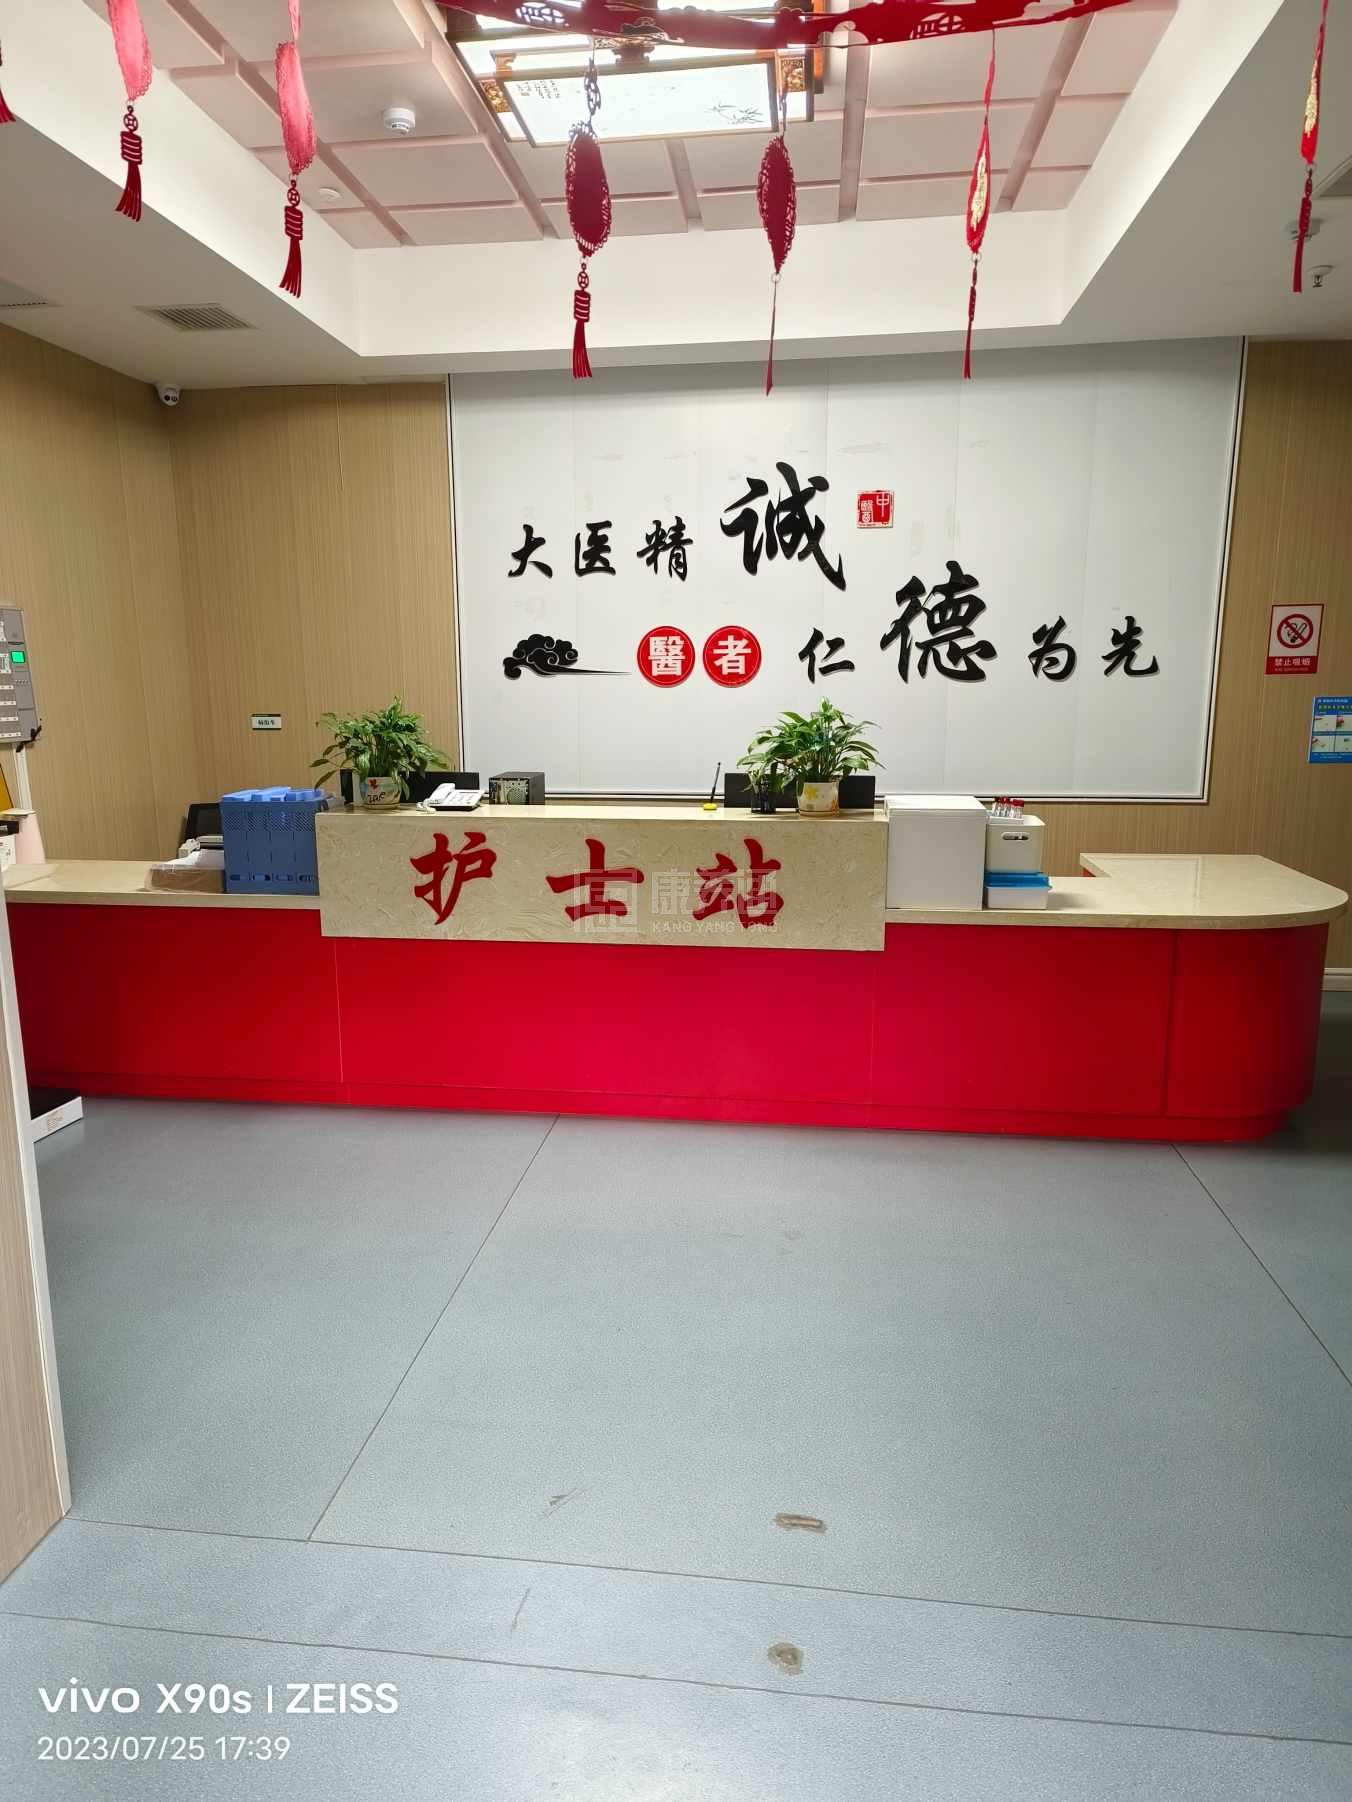 永州市零陵区中医医院康养中心服务项目图3惬意的环境、感受岁月静好